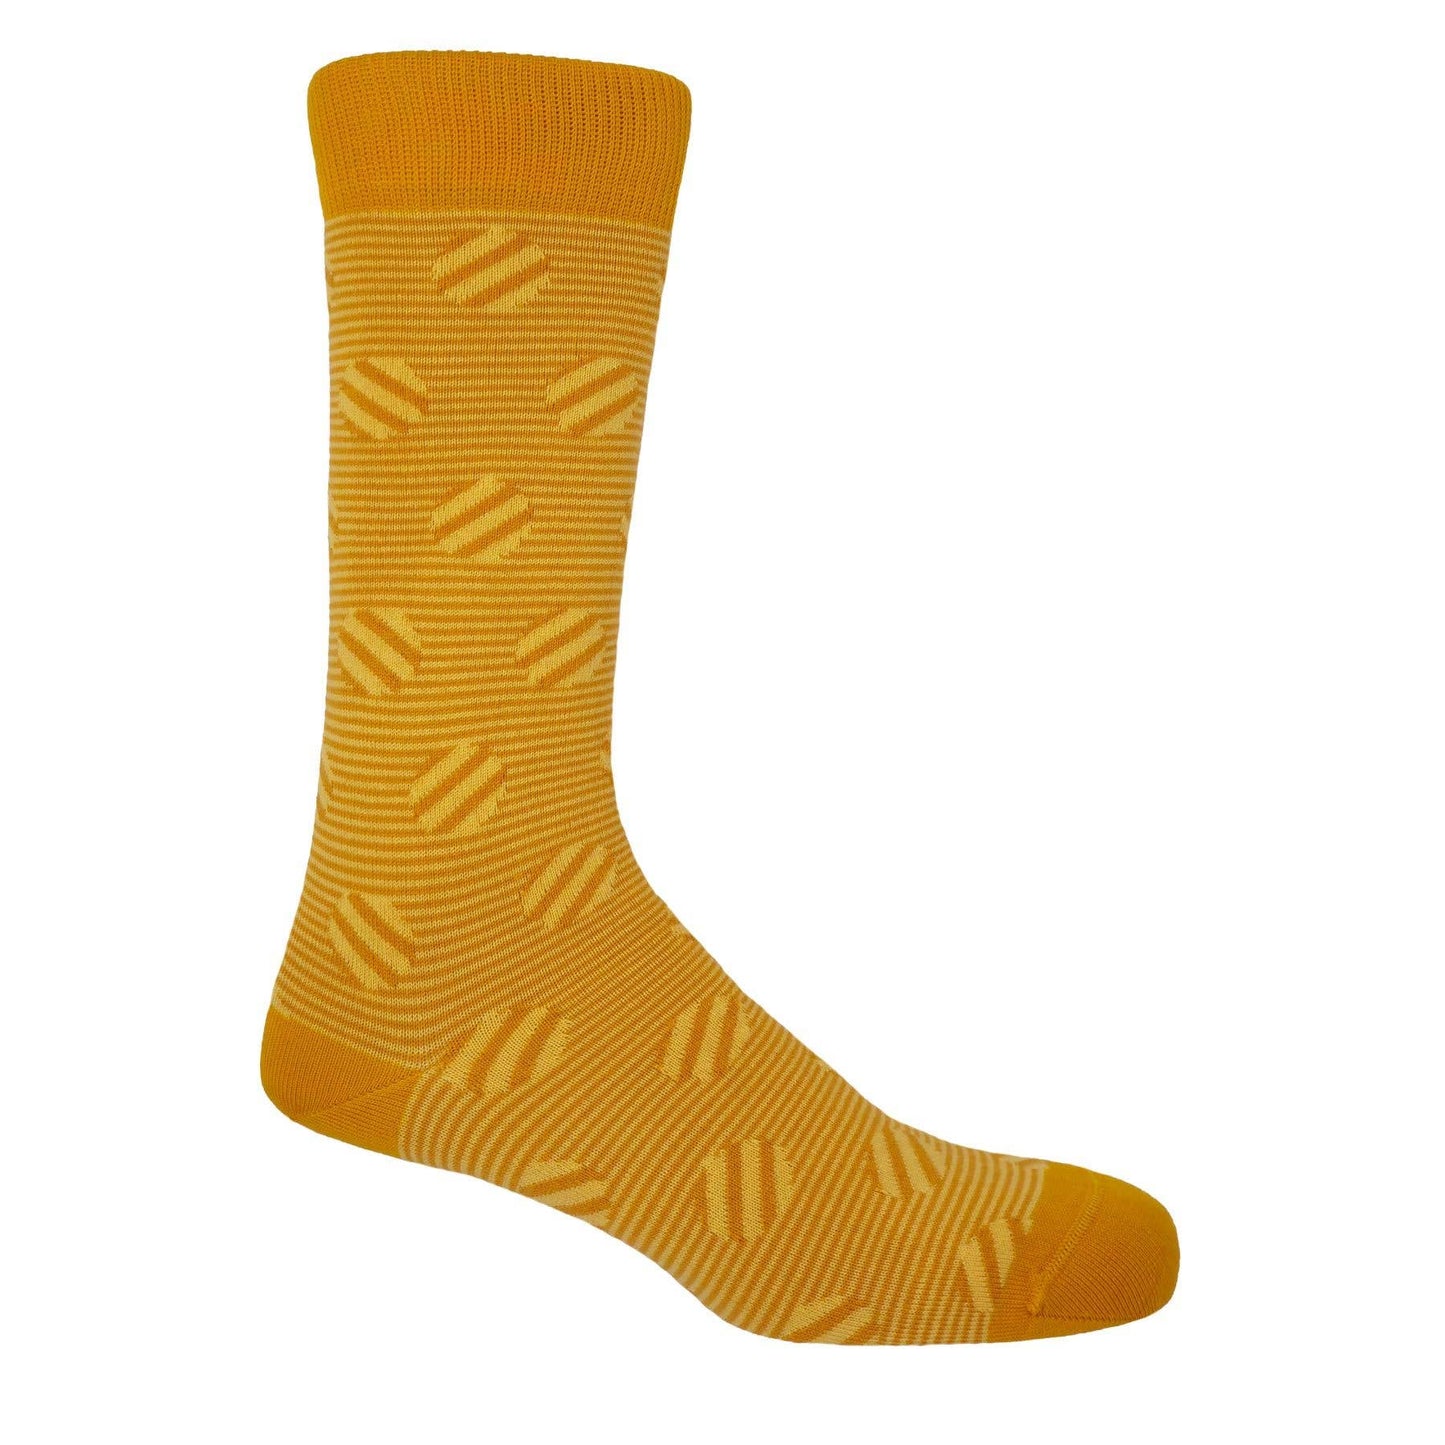 Peper Harow - Polka Stripe Men's Socks - Butterscotch